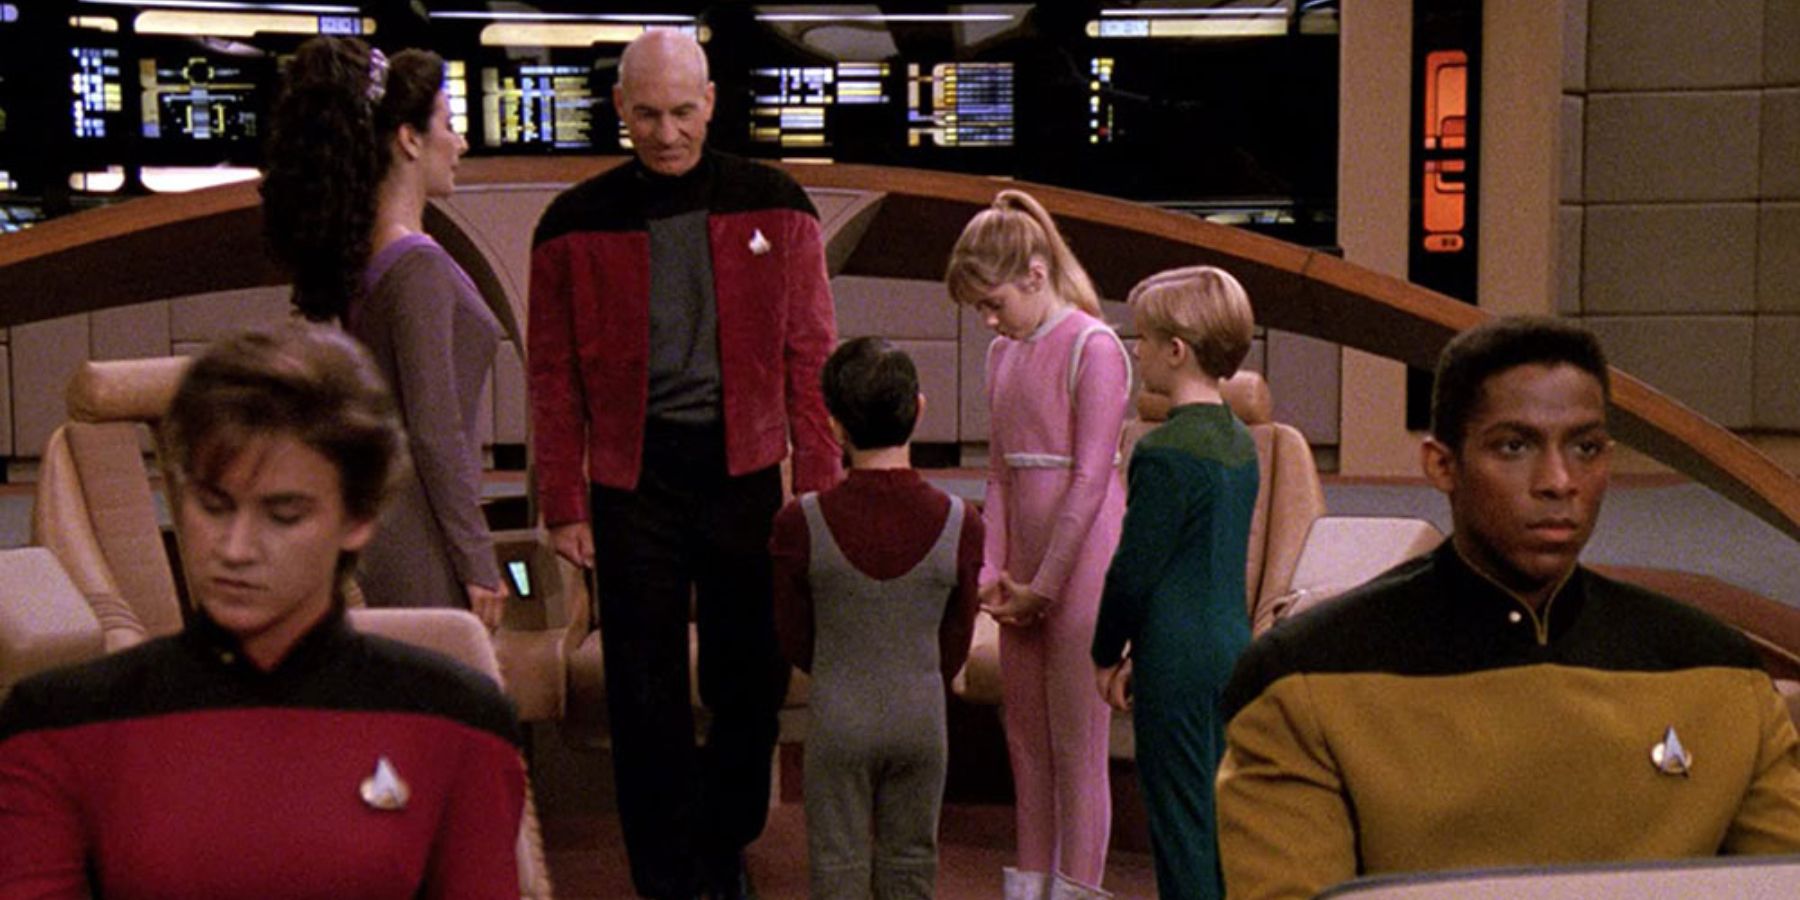 Star Trek children on the bridge